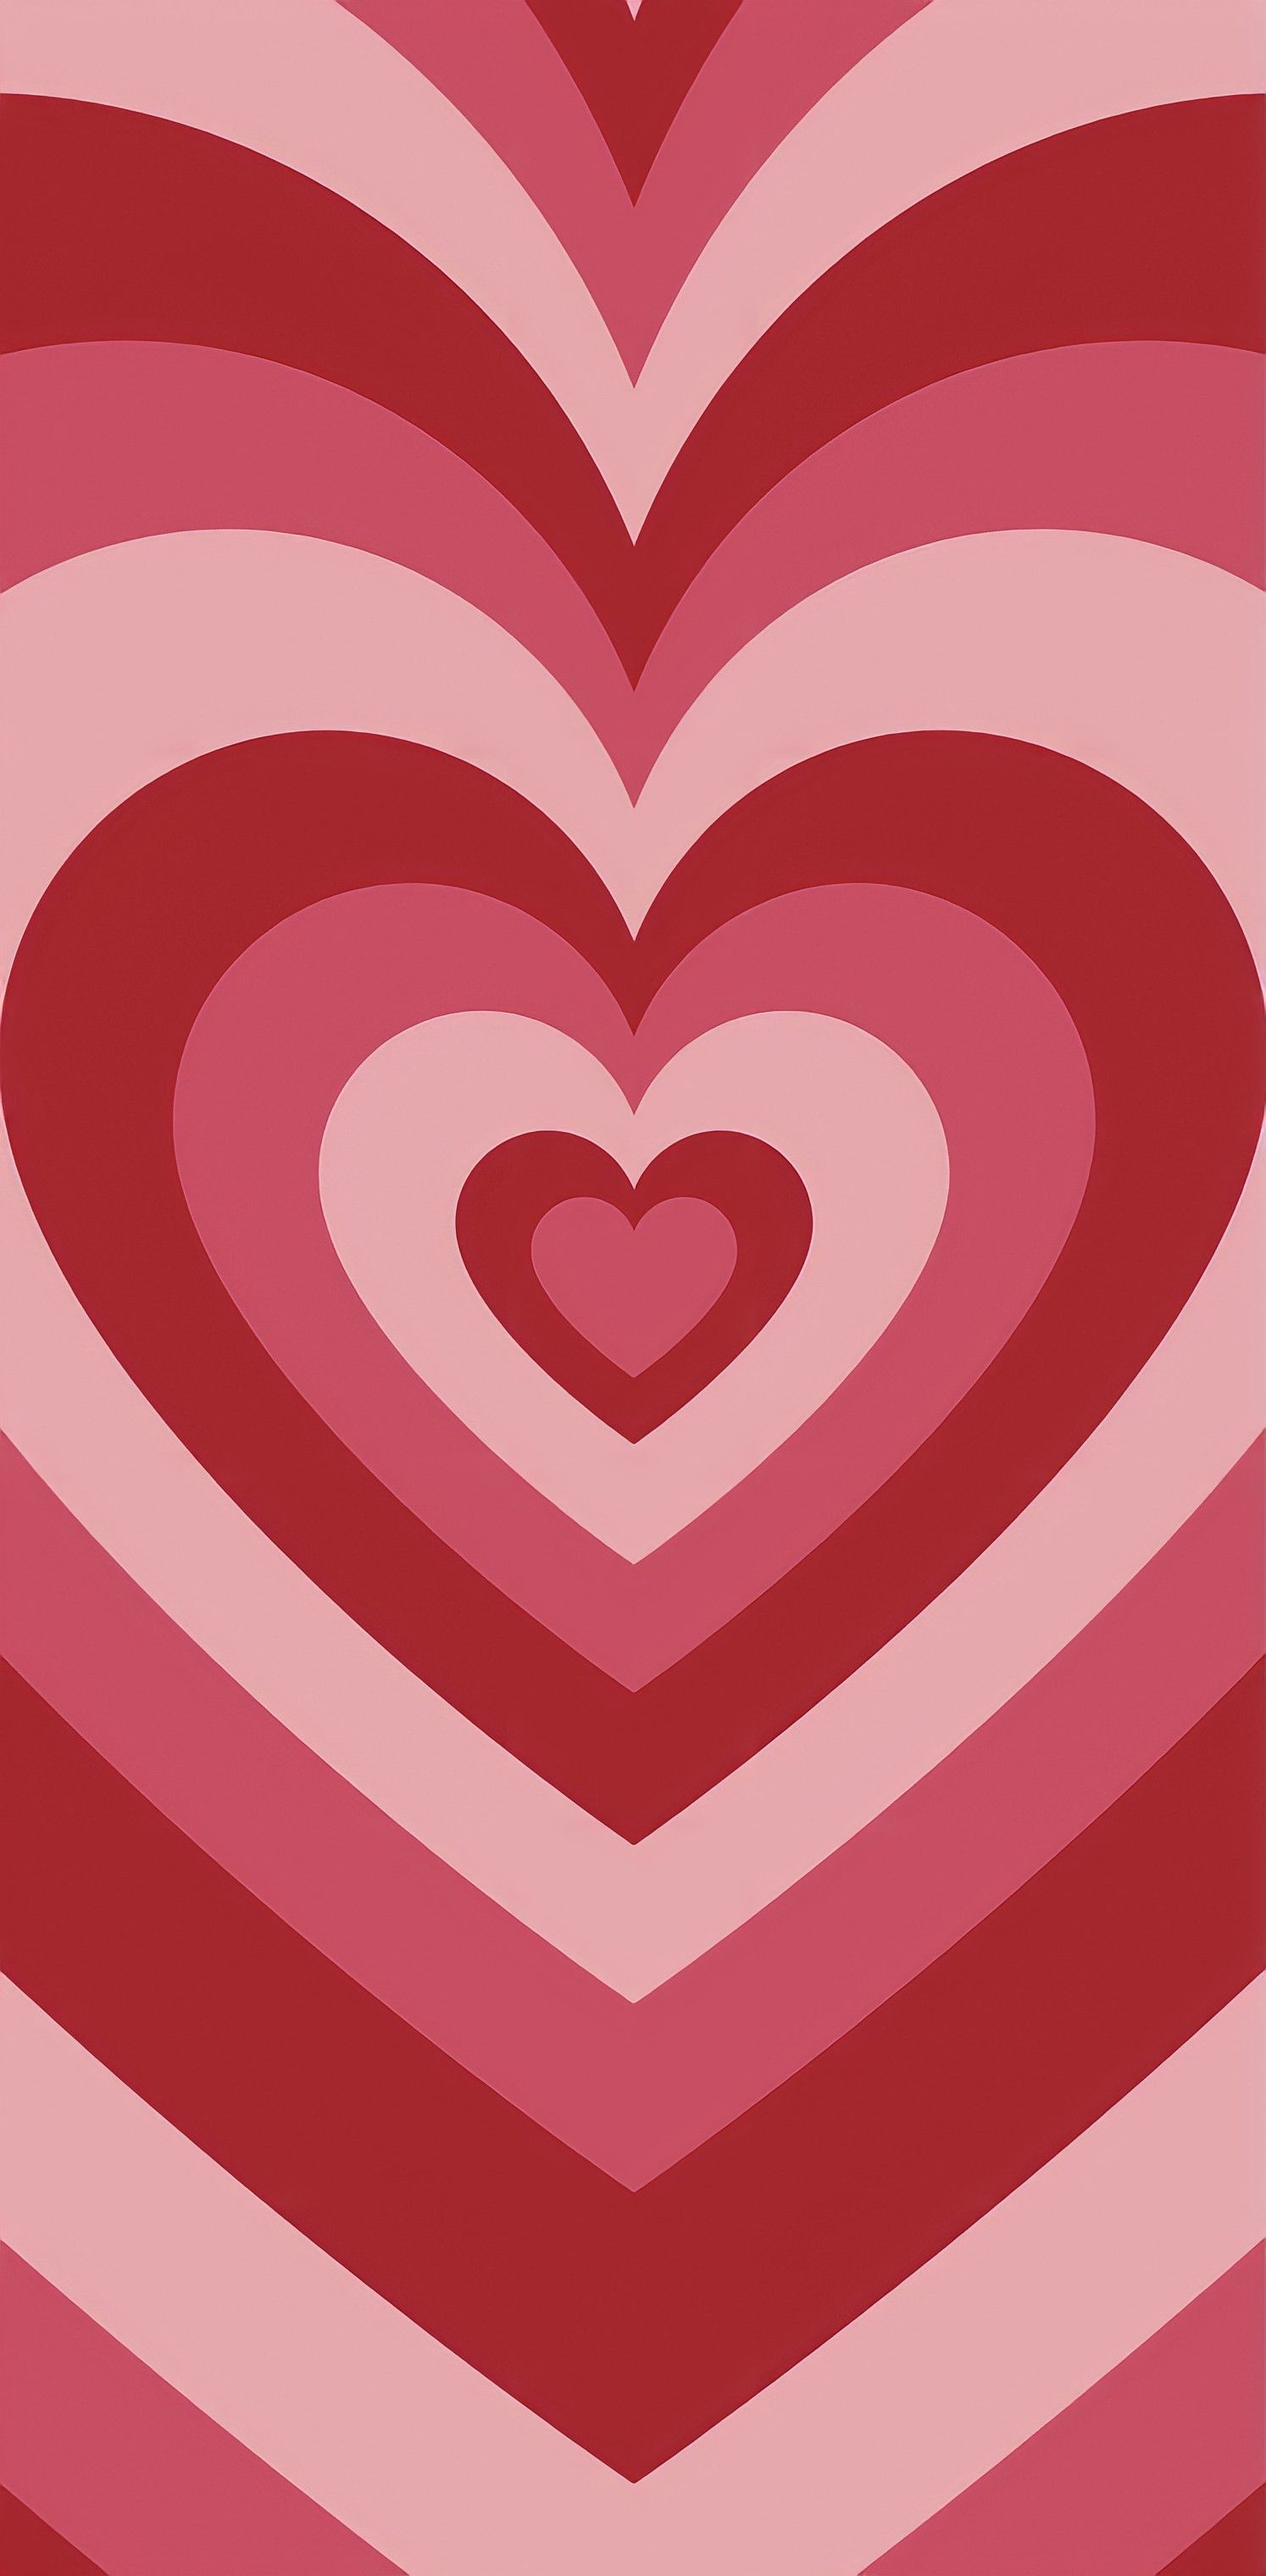 1494x3040 pink heart wallpaper | Heart wallpaper, Red heart aesthetic wallpaper, Cute tumblr wallpaper